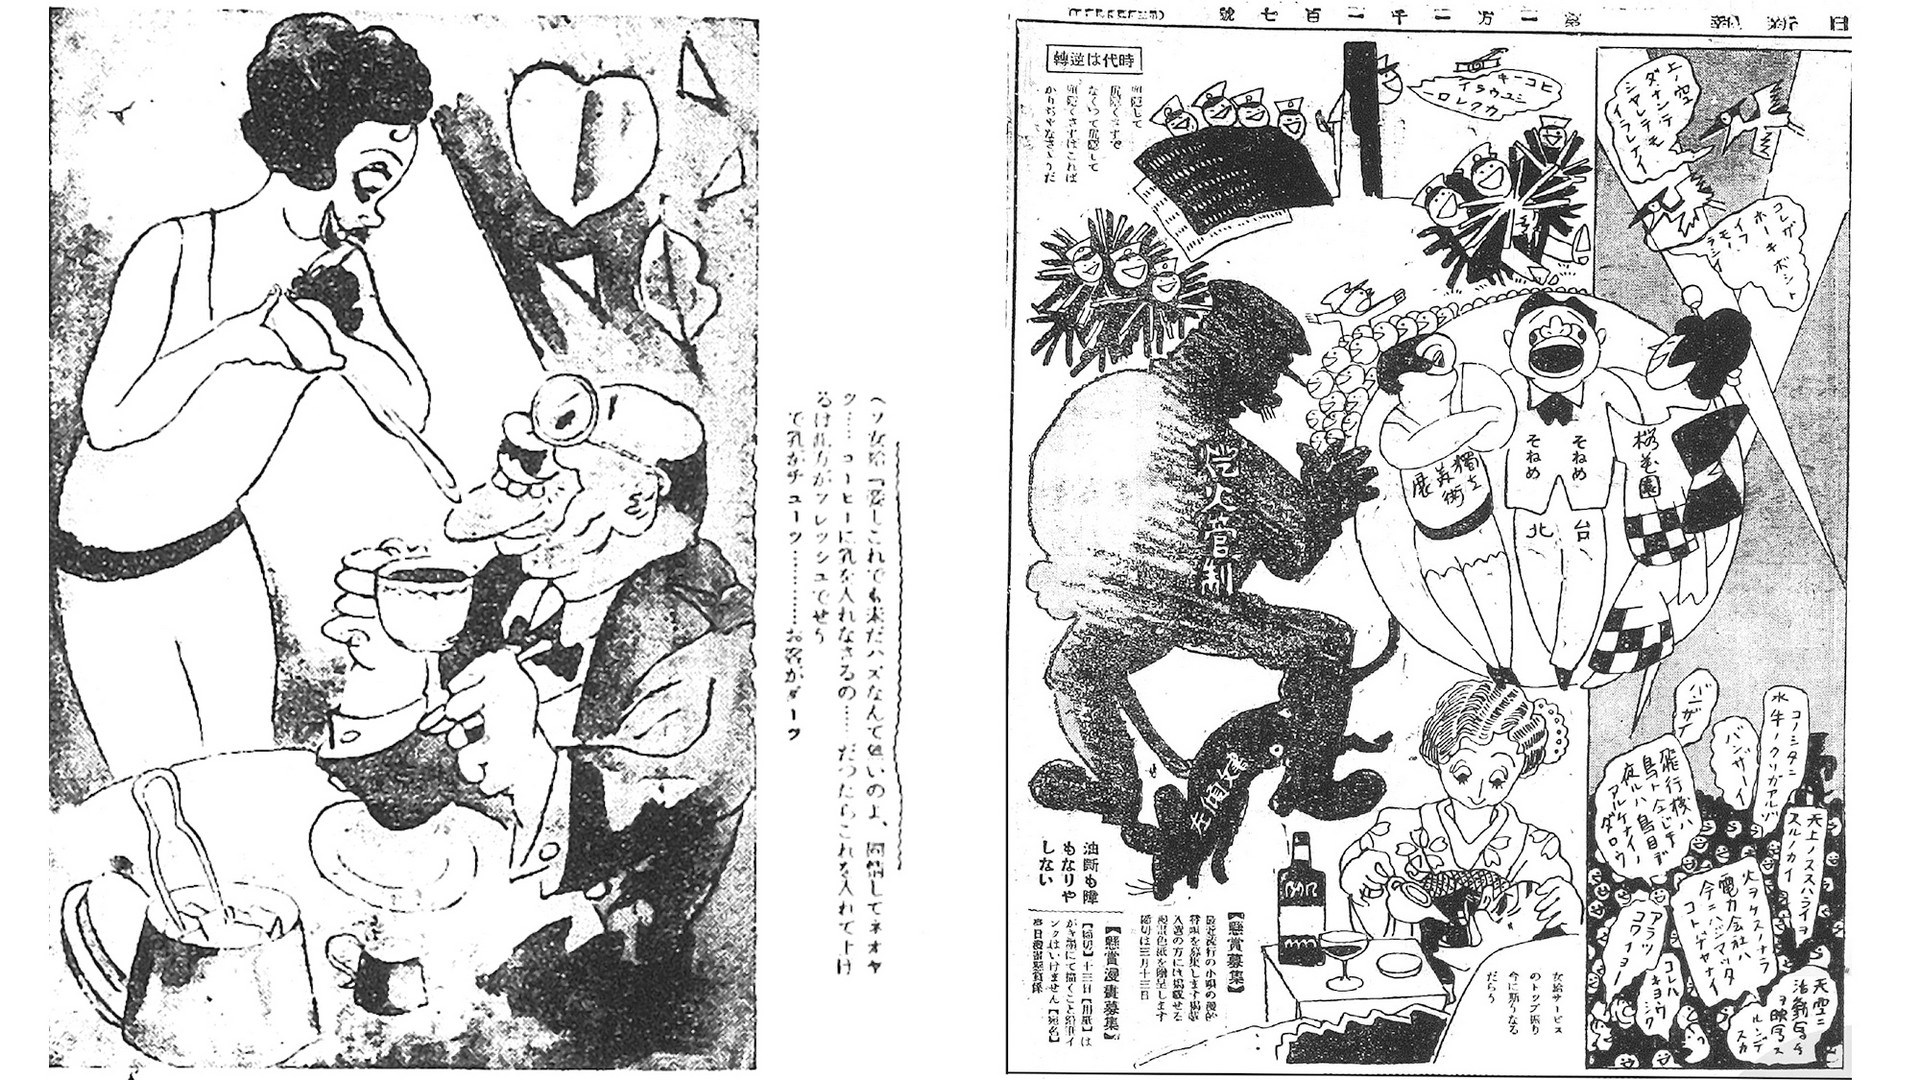 評論 圖像解碼 諷刺漫畫中的殖民想像 評 從諷刺漫畫解讀日本統治下的台灣 文化 中央社cna